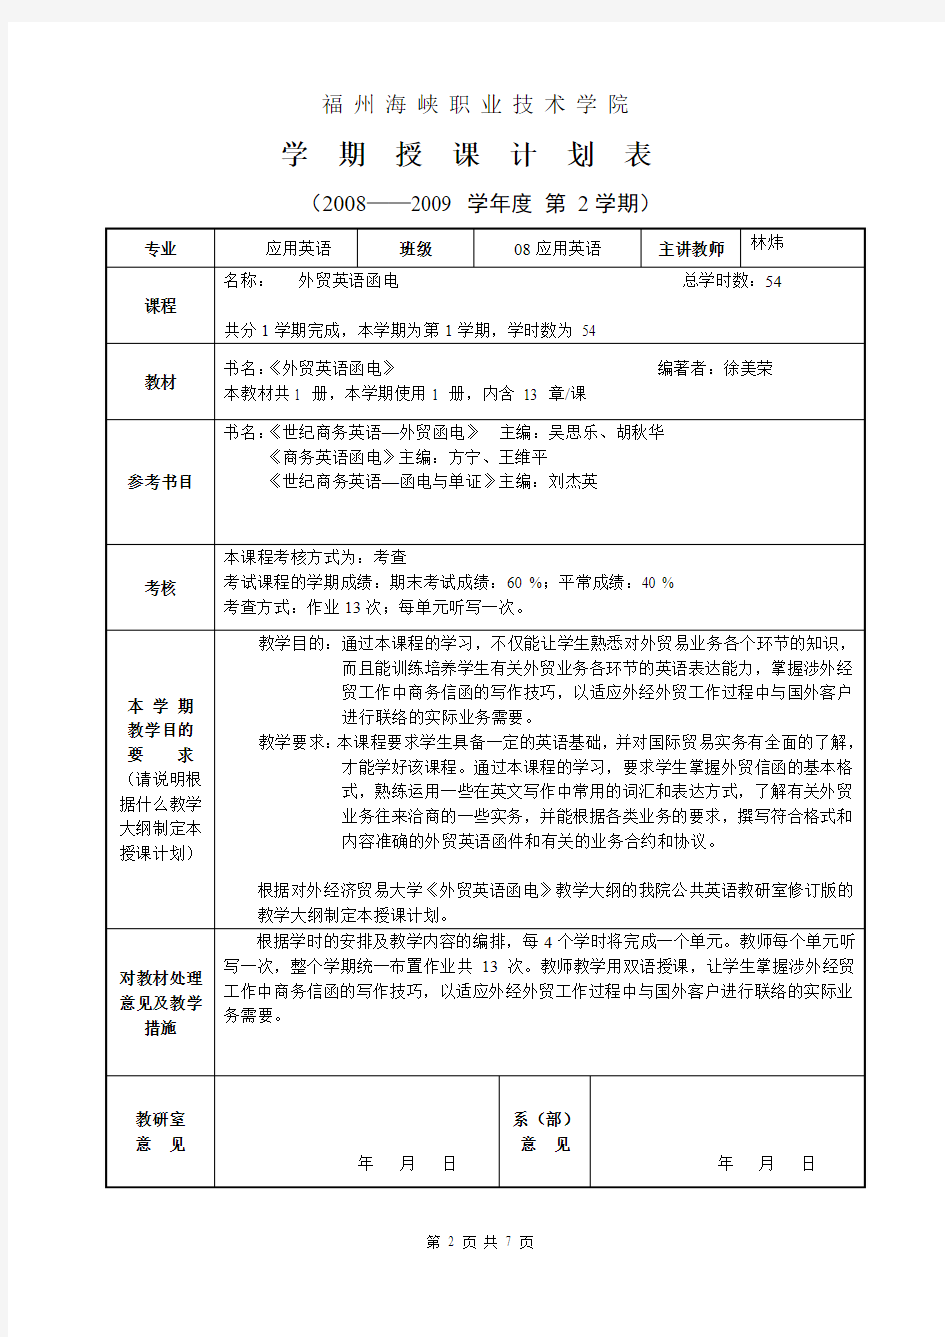 福州海峡职业技术学院授课进度计划表